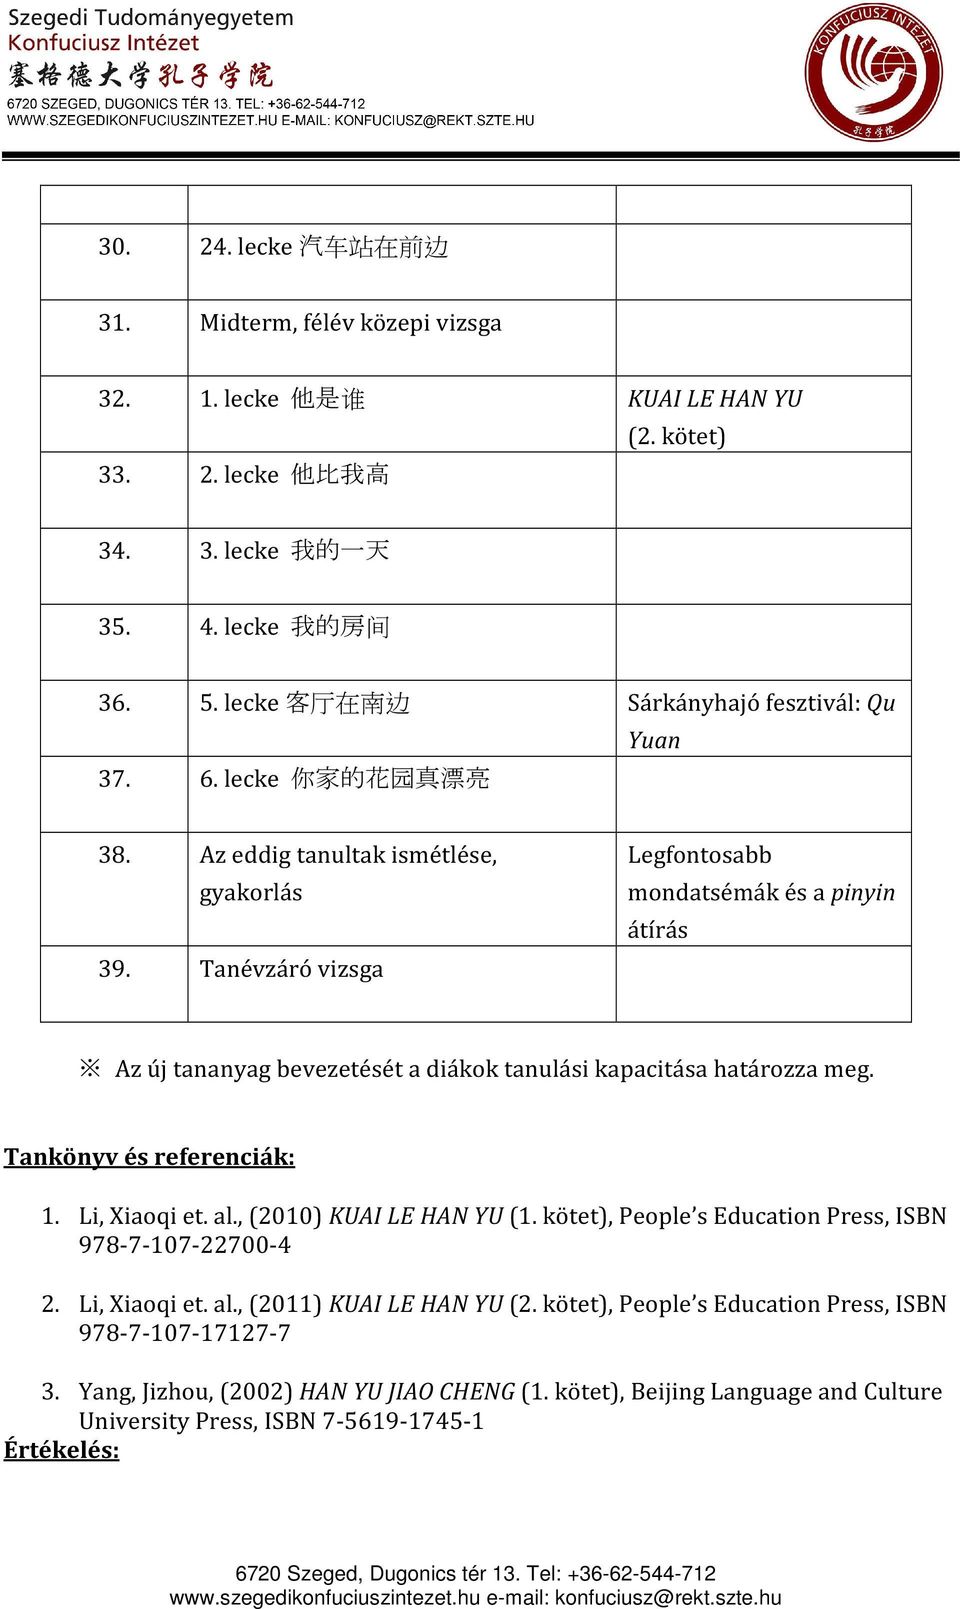 Tanévzáró vizsga Legfontosabb mondatsémák és a pinyin átírás Az új tananyag bevezetését a diákok tanulási kapacitása határozza meg. Tankönyv és referenciák: 1. Li, Xiaoqi et. al.